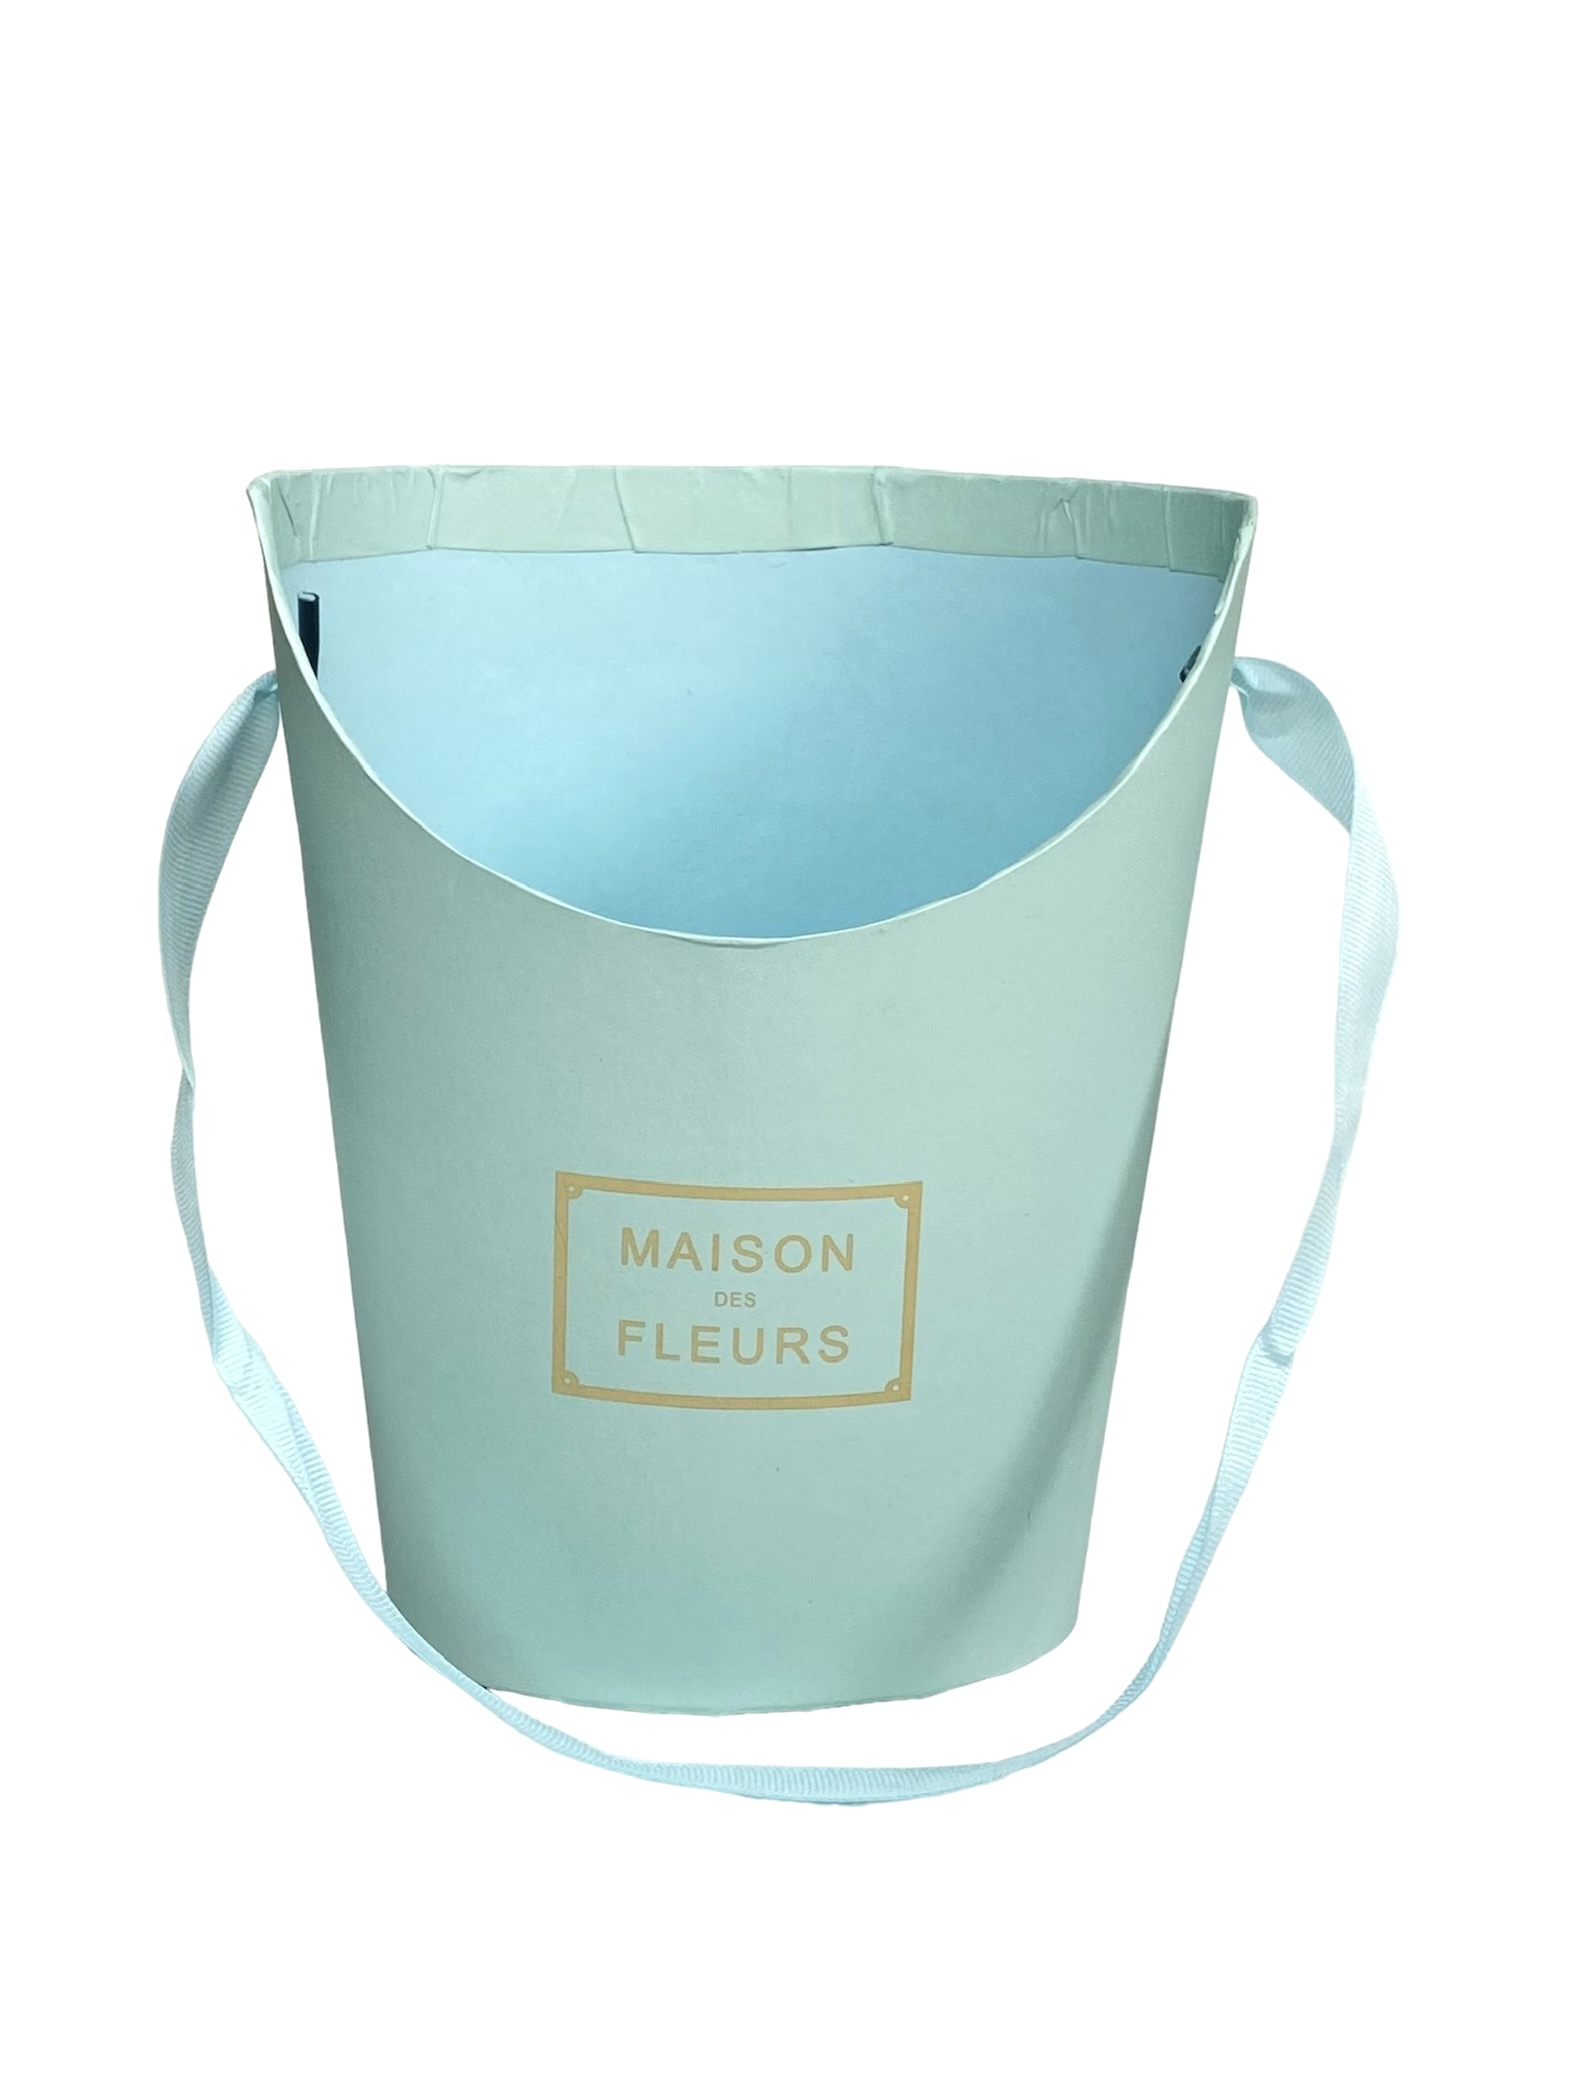 Коробка-сумка полукруглая с ручкой (гофра) 19*15*11,5см тиффани Maison des Fleurs